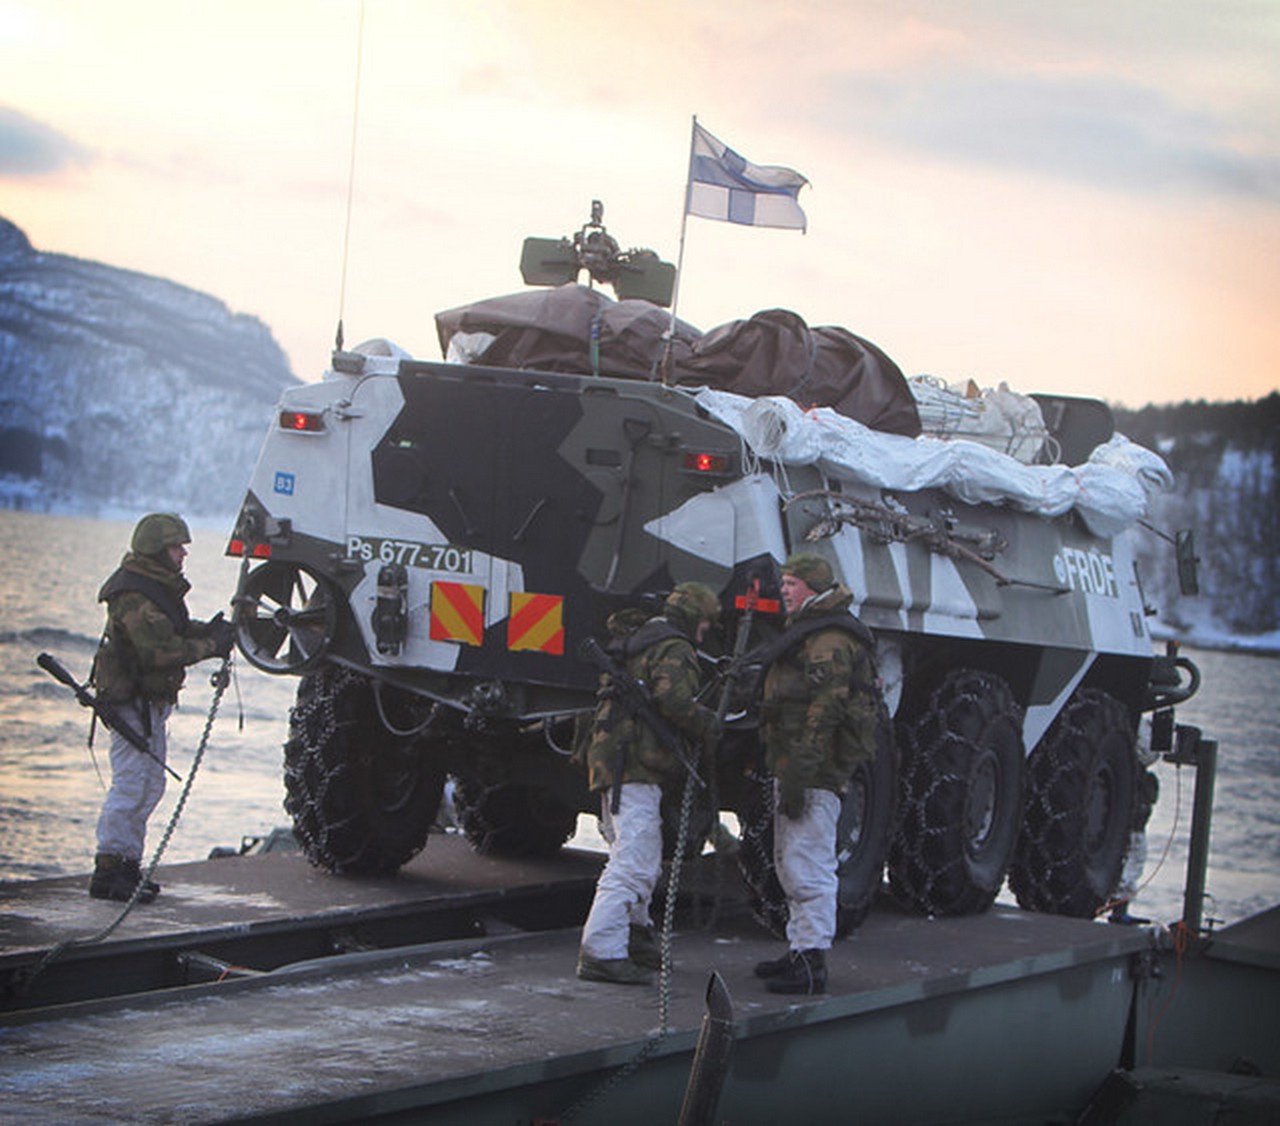 До последнего времени армия Суоми была частично оснащена российской боевой техникой, теперь ей предстоит масштабное перевооружение под стандарты НАТО.